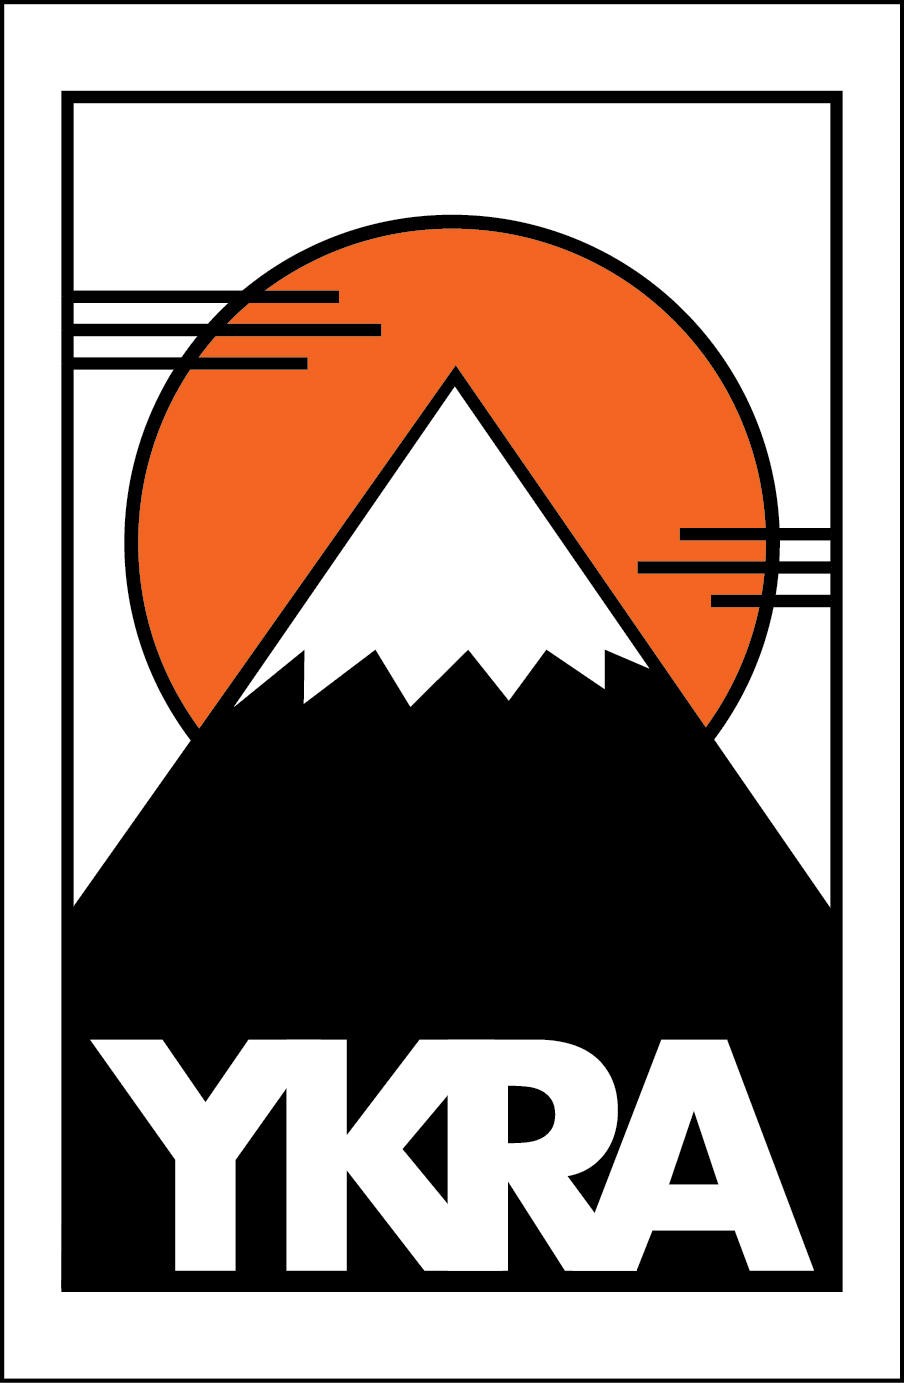 ykra logo